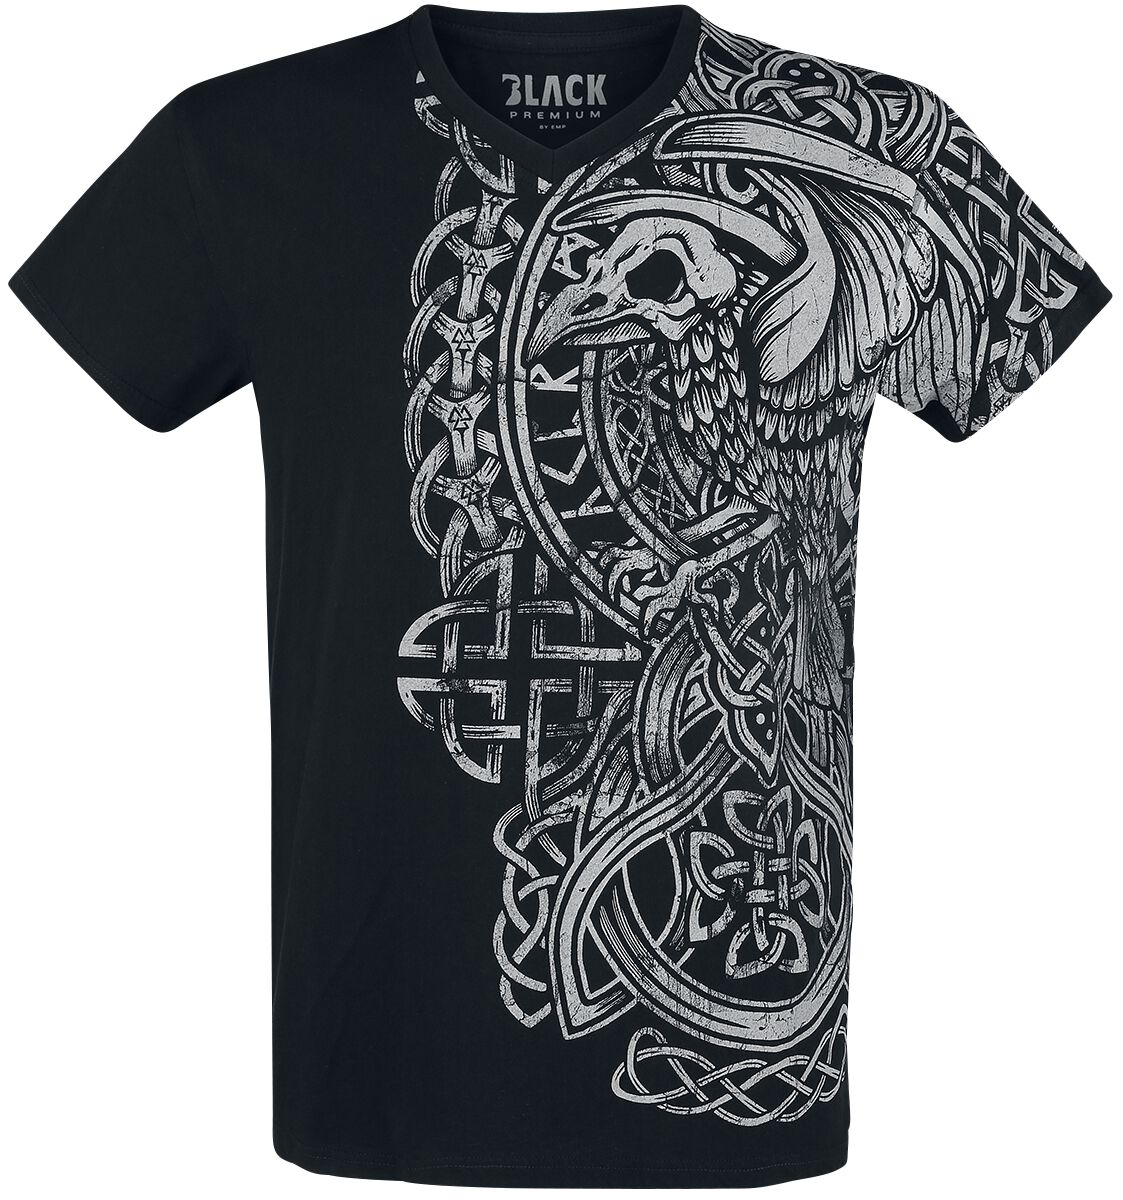 Black Premium by EMP schwarzes T-Shirt mit Print und V-Ausschnitt T-Shirt schwarz in XL